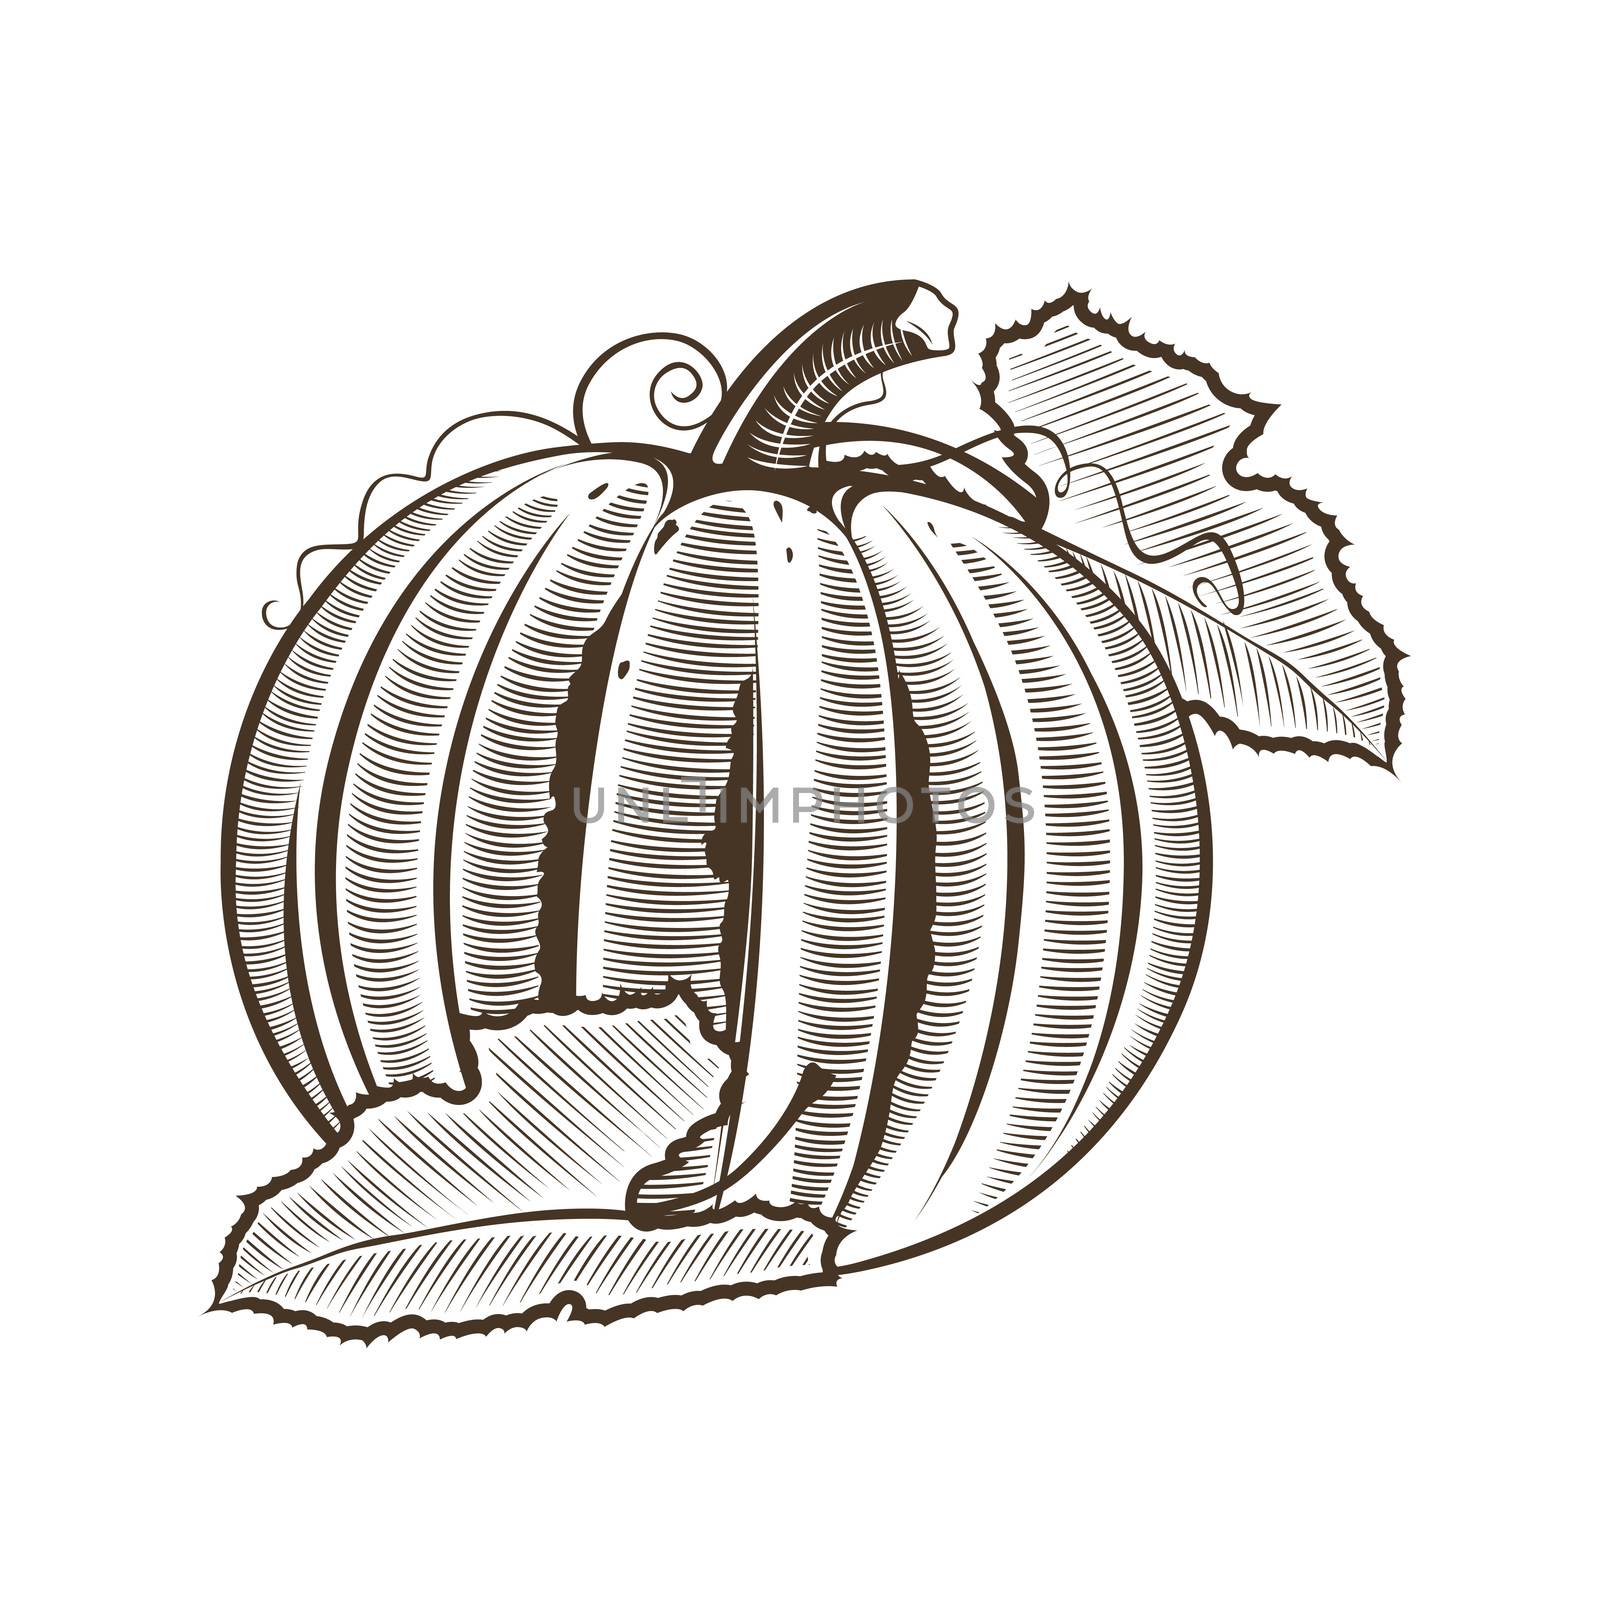 Pumpkin in vintage style. Line art illustration.